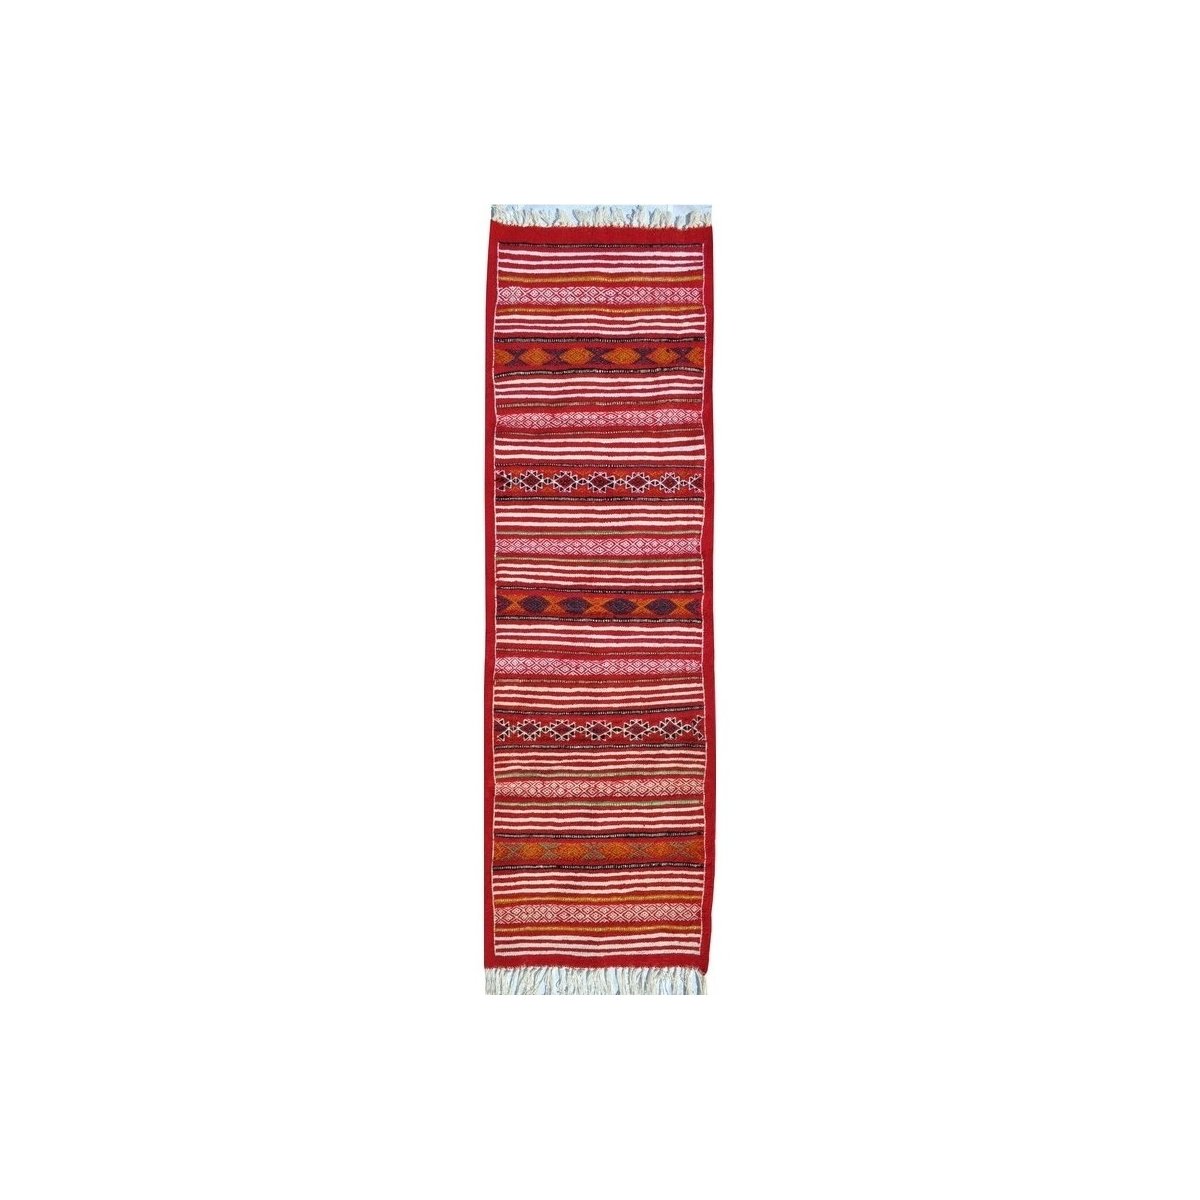 Tapete berbere Tapete Kilim longo Essour 65x190 Vermelho (Tecidos à mão, Lã, Tunísia) Tapete tunisiano kilim, estilo marroquino.